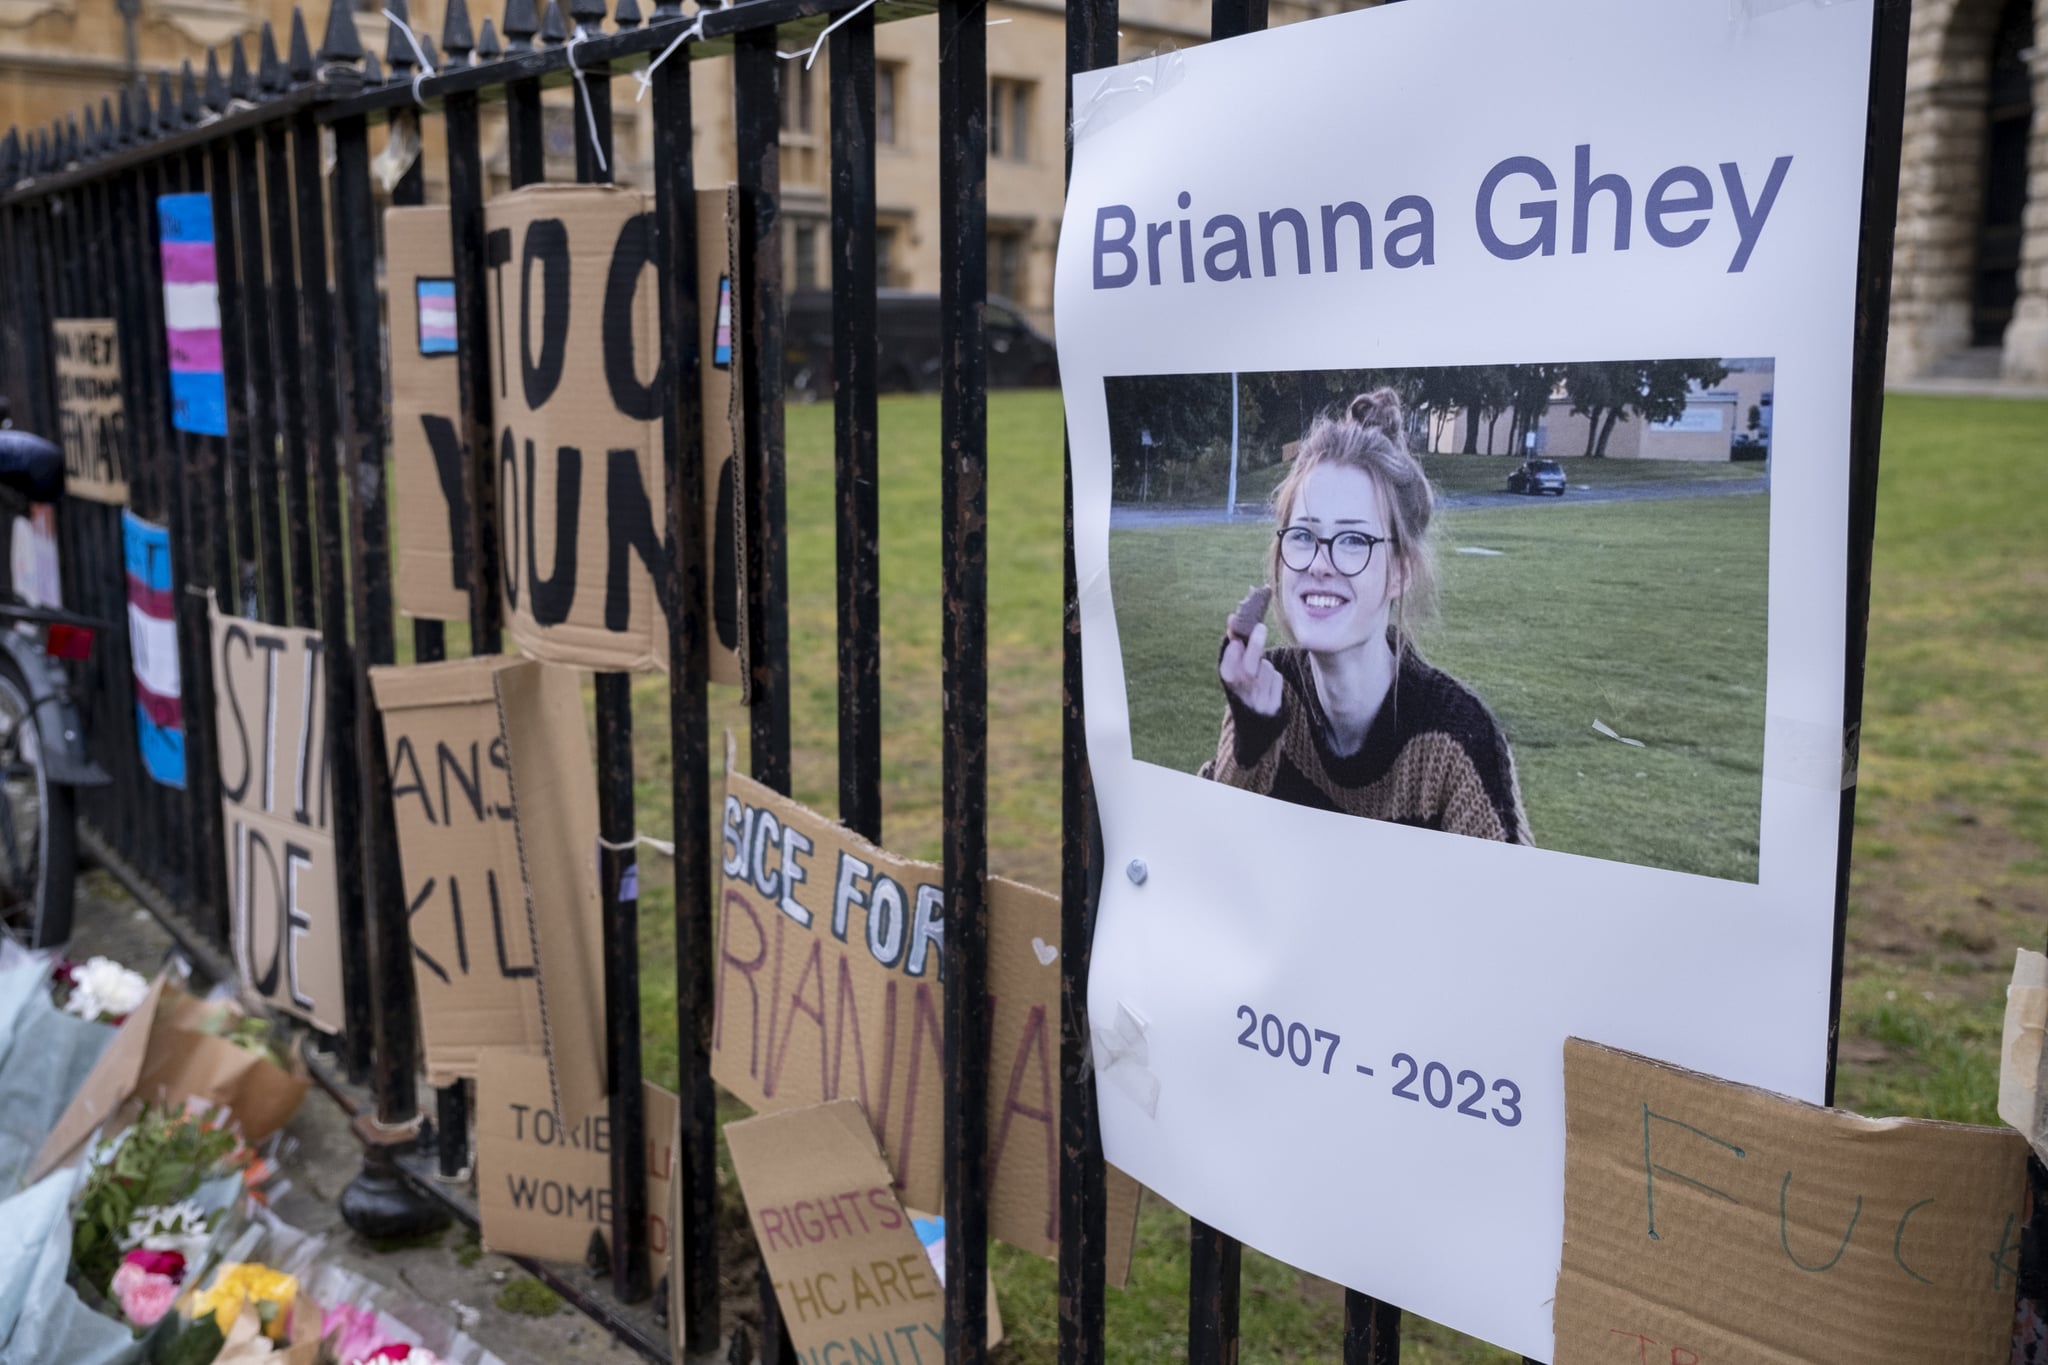 Cartes de fleurs, bougies et panneaux pour l'adolescente assassinée Brianna Ghey sur les garde-corps le 21 février 2023 à Oxford, Royaume-Uni.  Ghey était une fille transgenre de 16 ans et une élève de 11e année à la Birchwood Community High School.  (photo de Mike Kemp/En images via Getty Images)